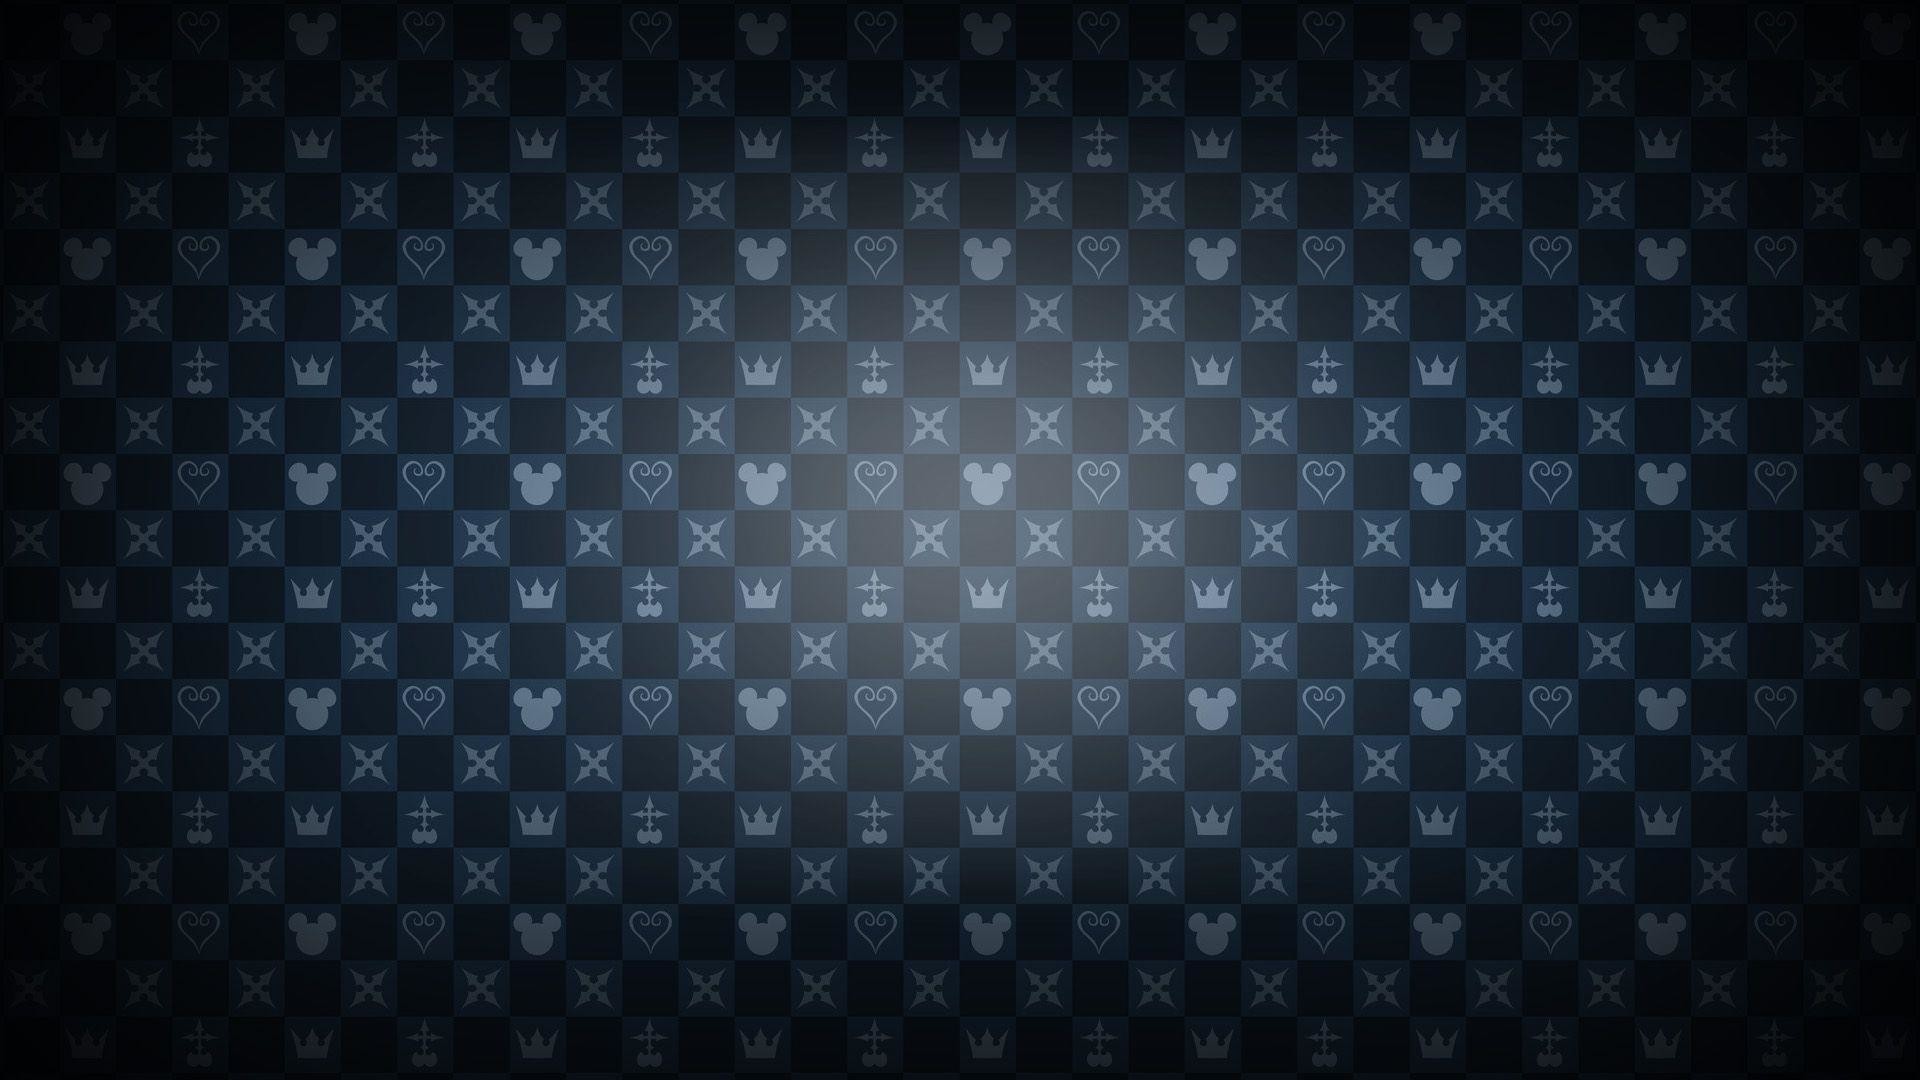 1920x1080 Kingdom Hearts pattern wallpaper #